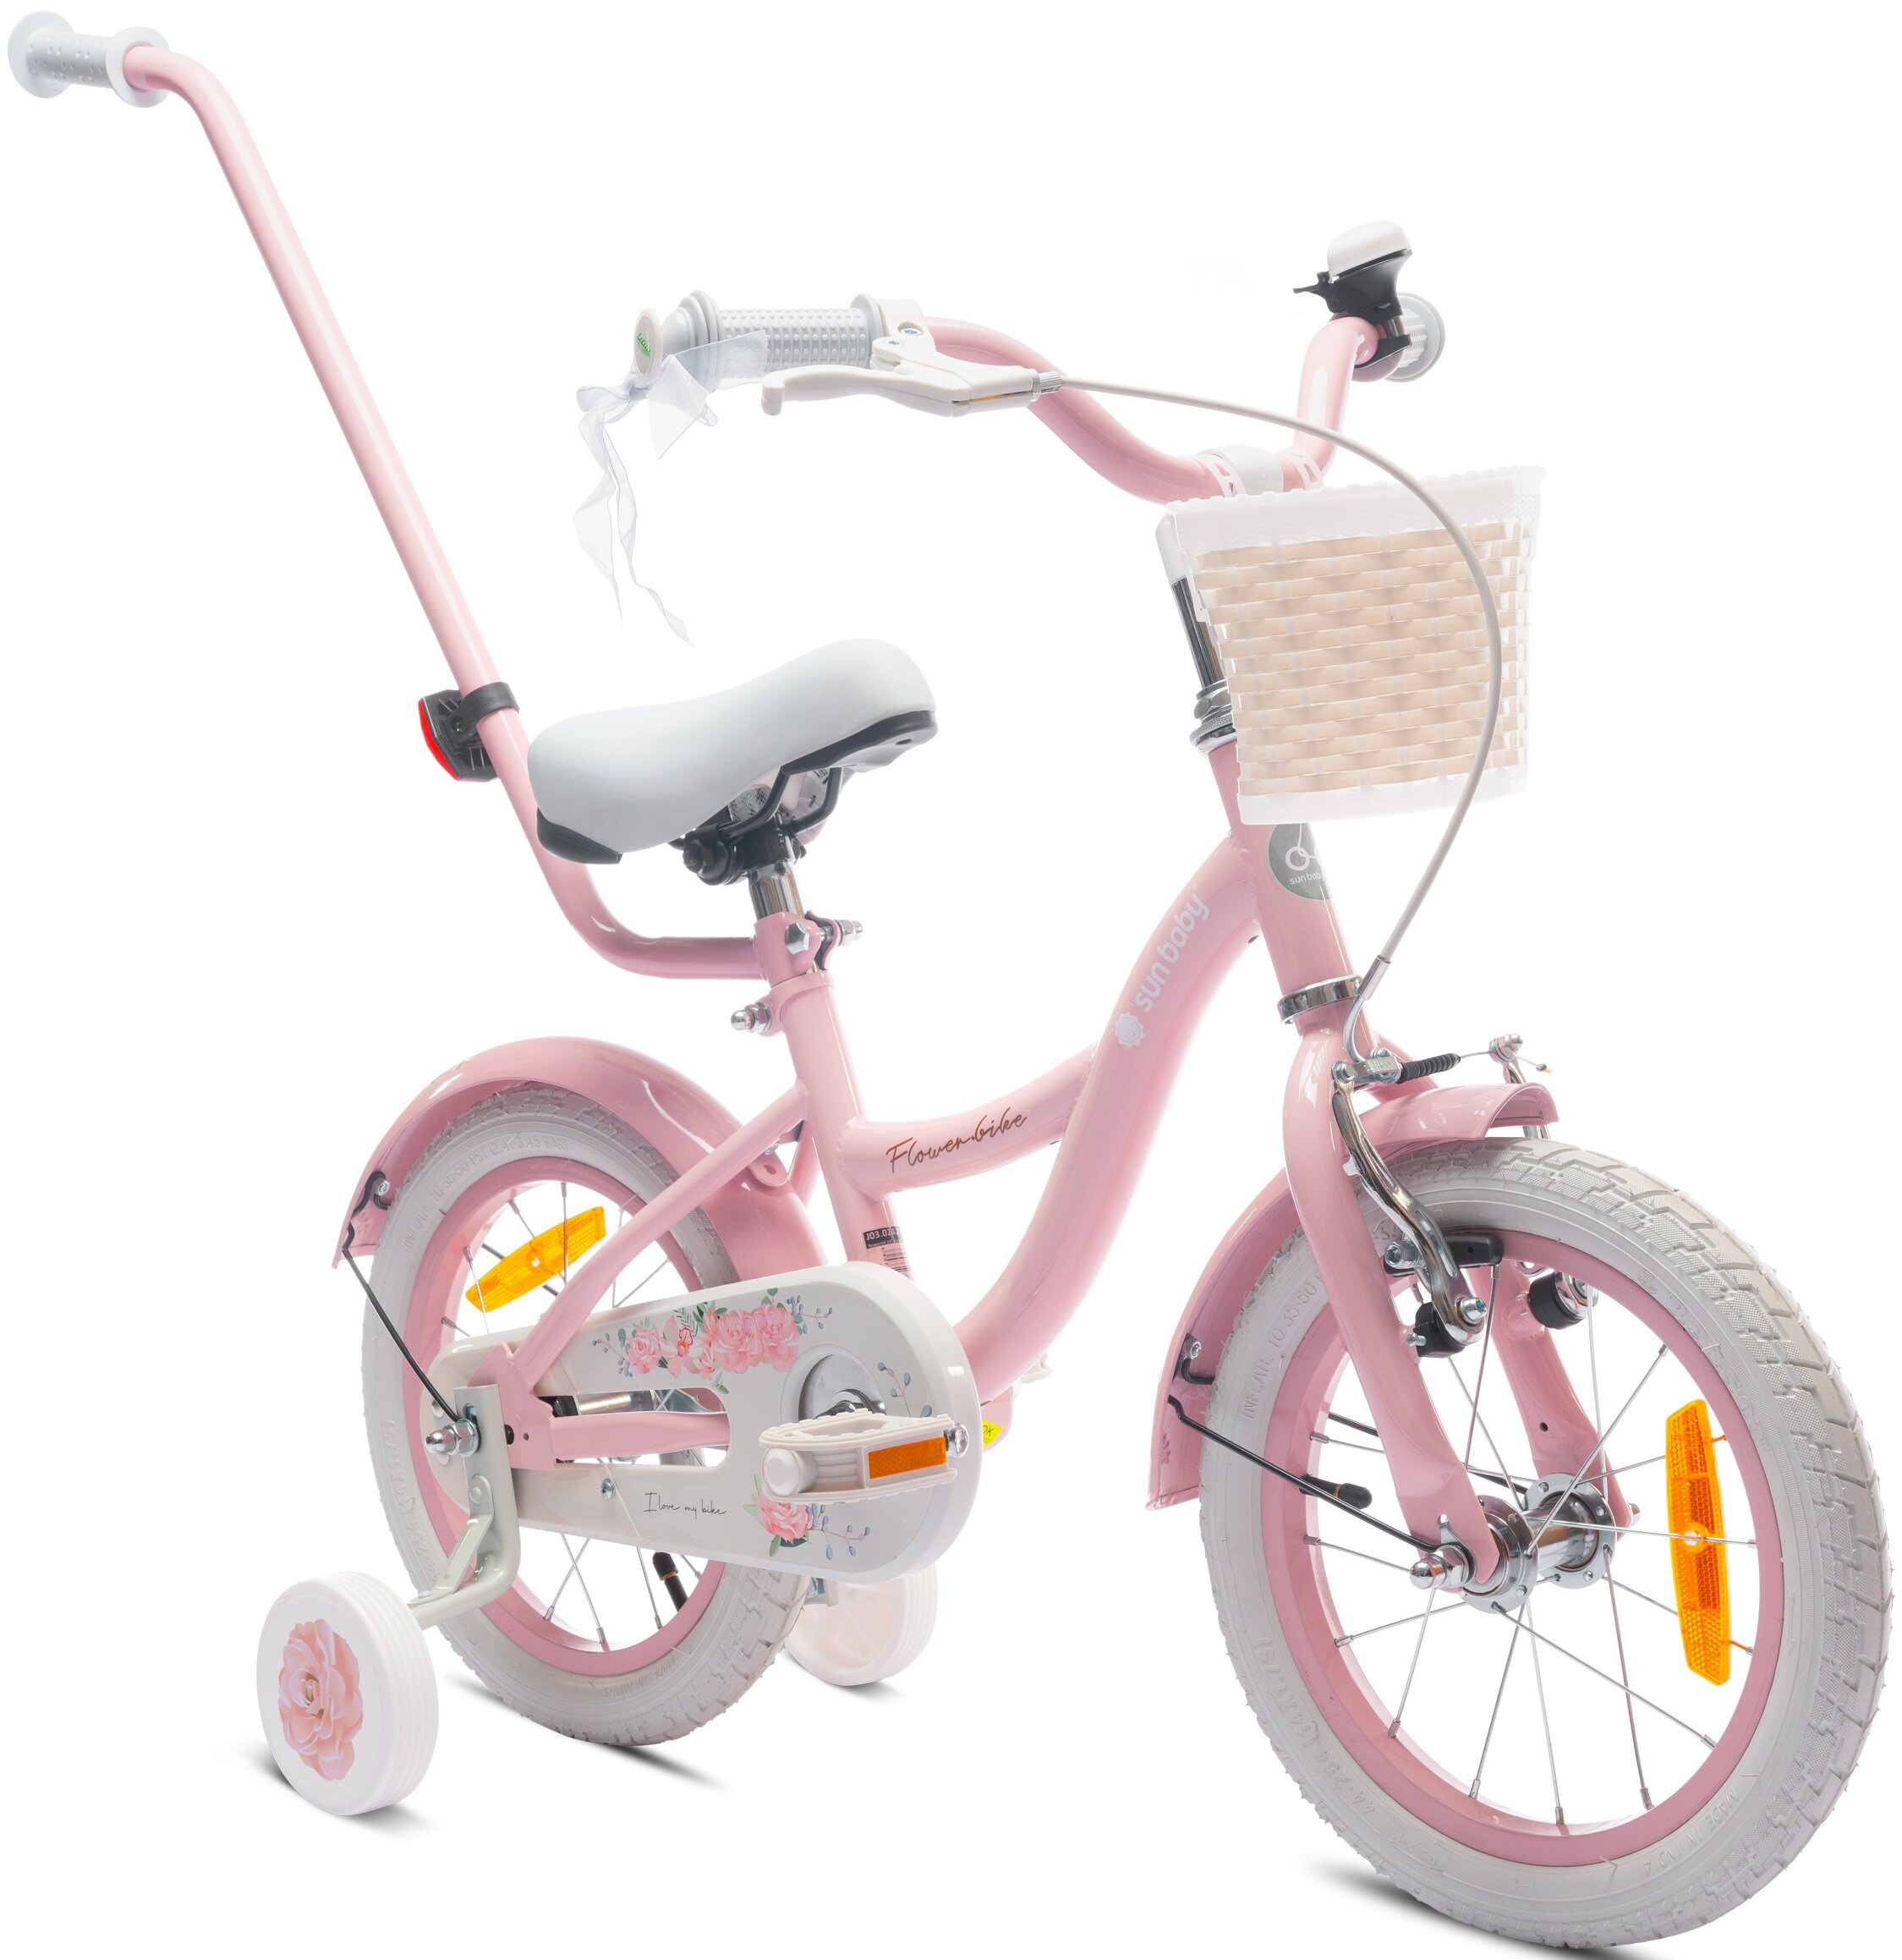 Rower dziecięcy SUN BABY Flower 16 cali dla dziewczynki Różowy różowy lakier solidna konstrukcja nowoczesne wzornictwo dla dziewczynek w wieku od 4 do 6 lat efektywna nauka jazdy szlifowanie umiejętności jazdy na rowerze